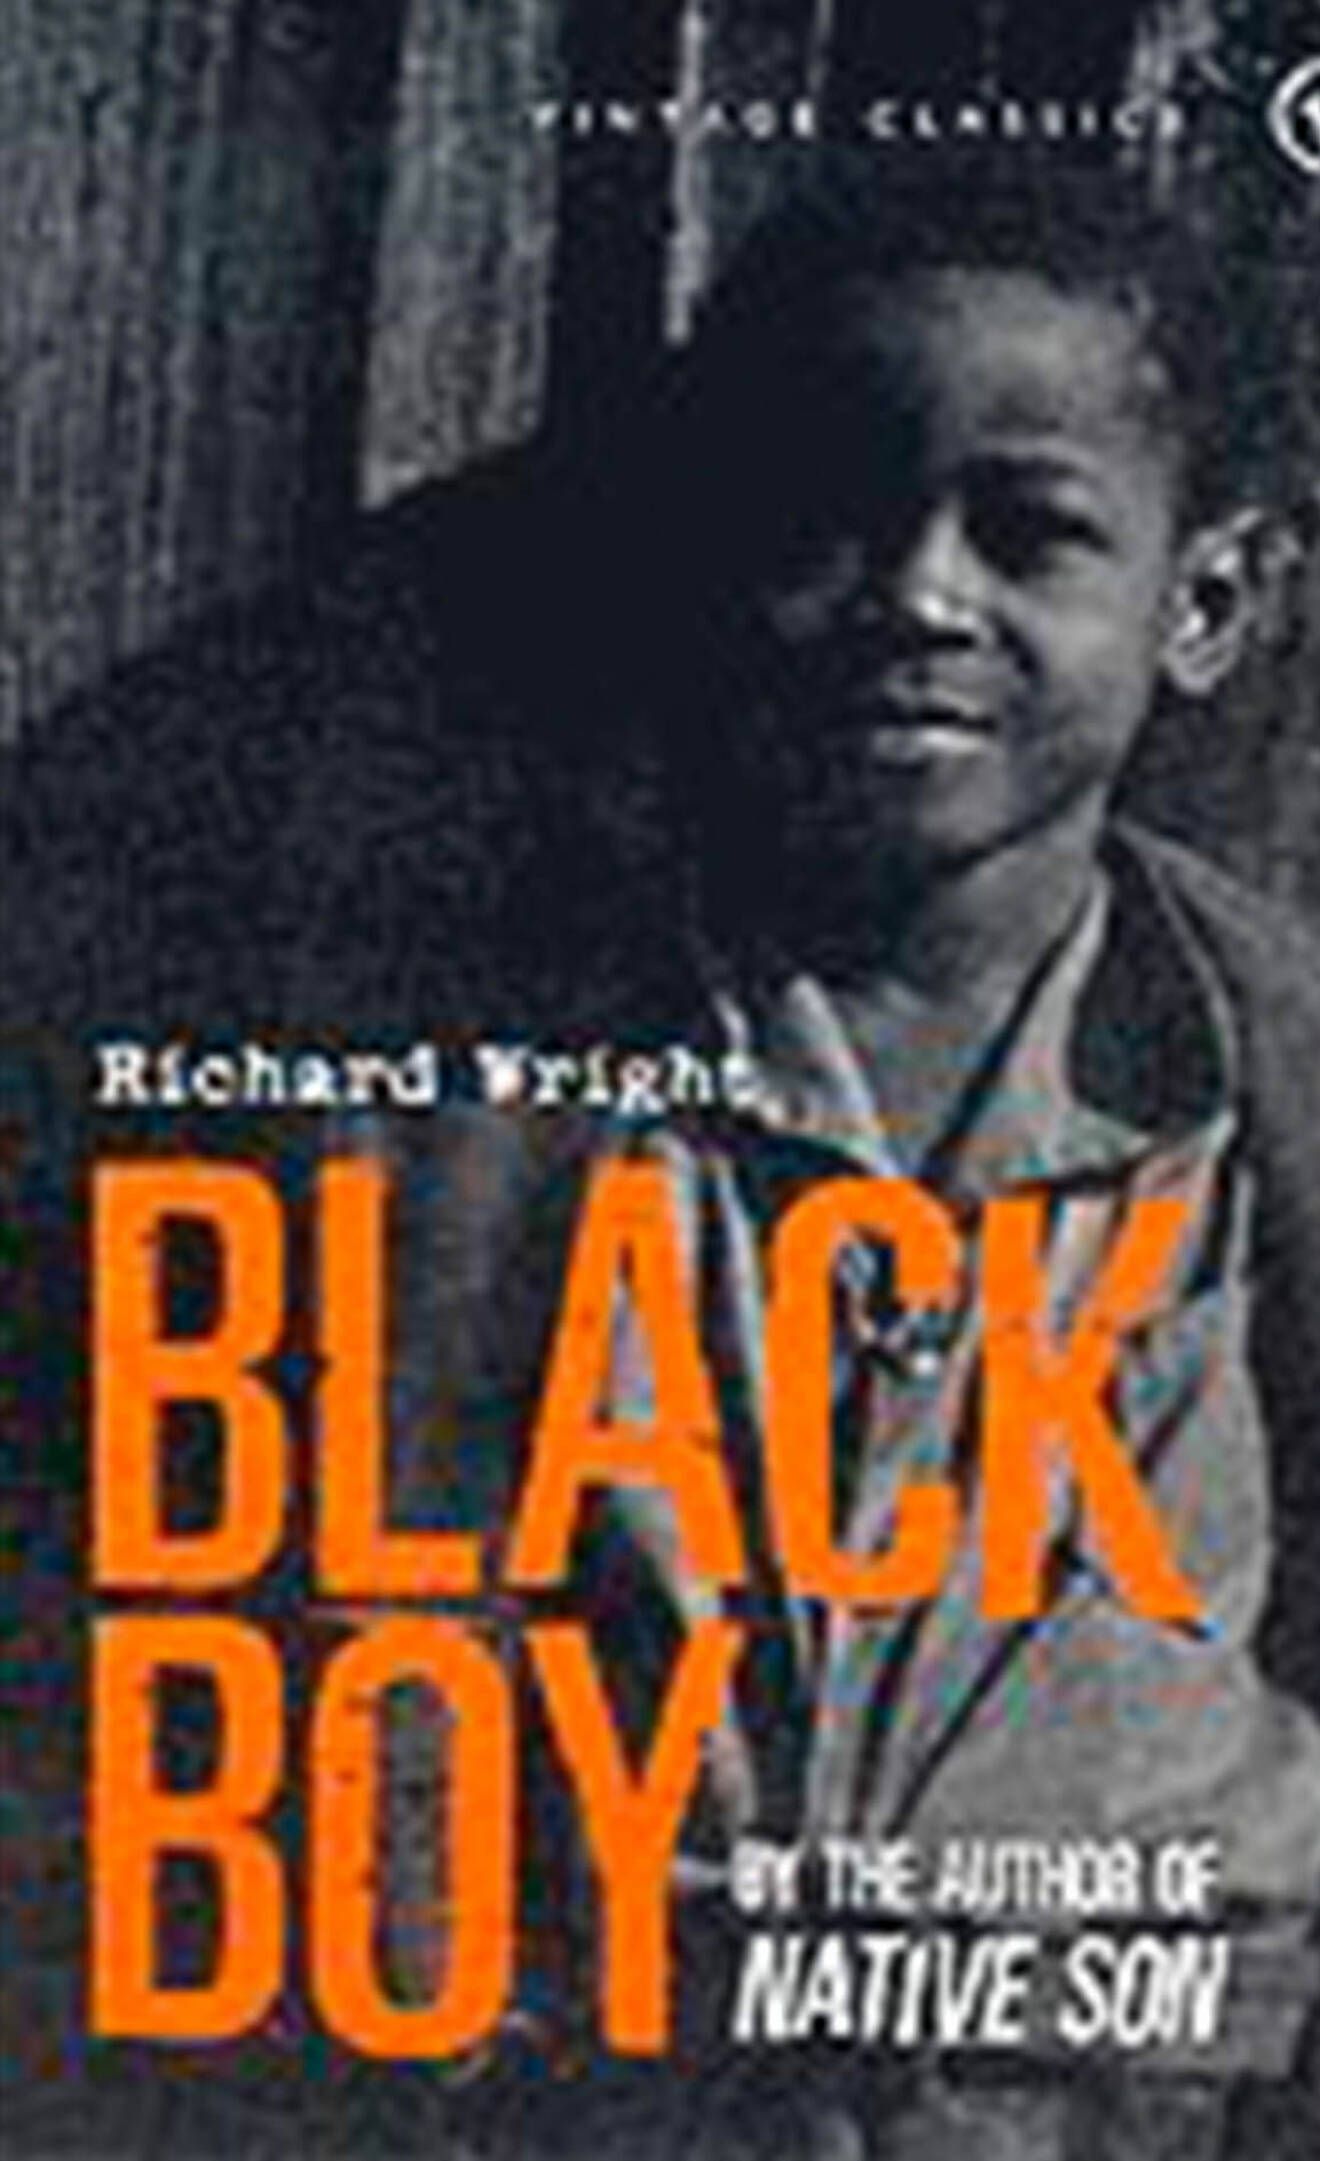 Bokomslag till Son av sitt land- foto på en ung Richard Wright.